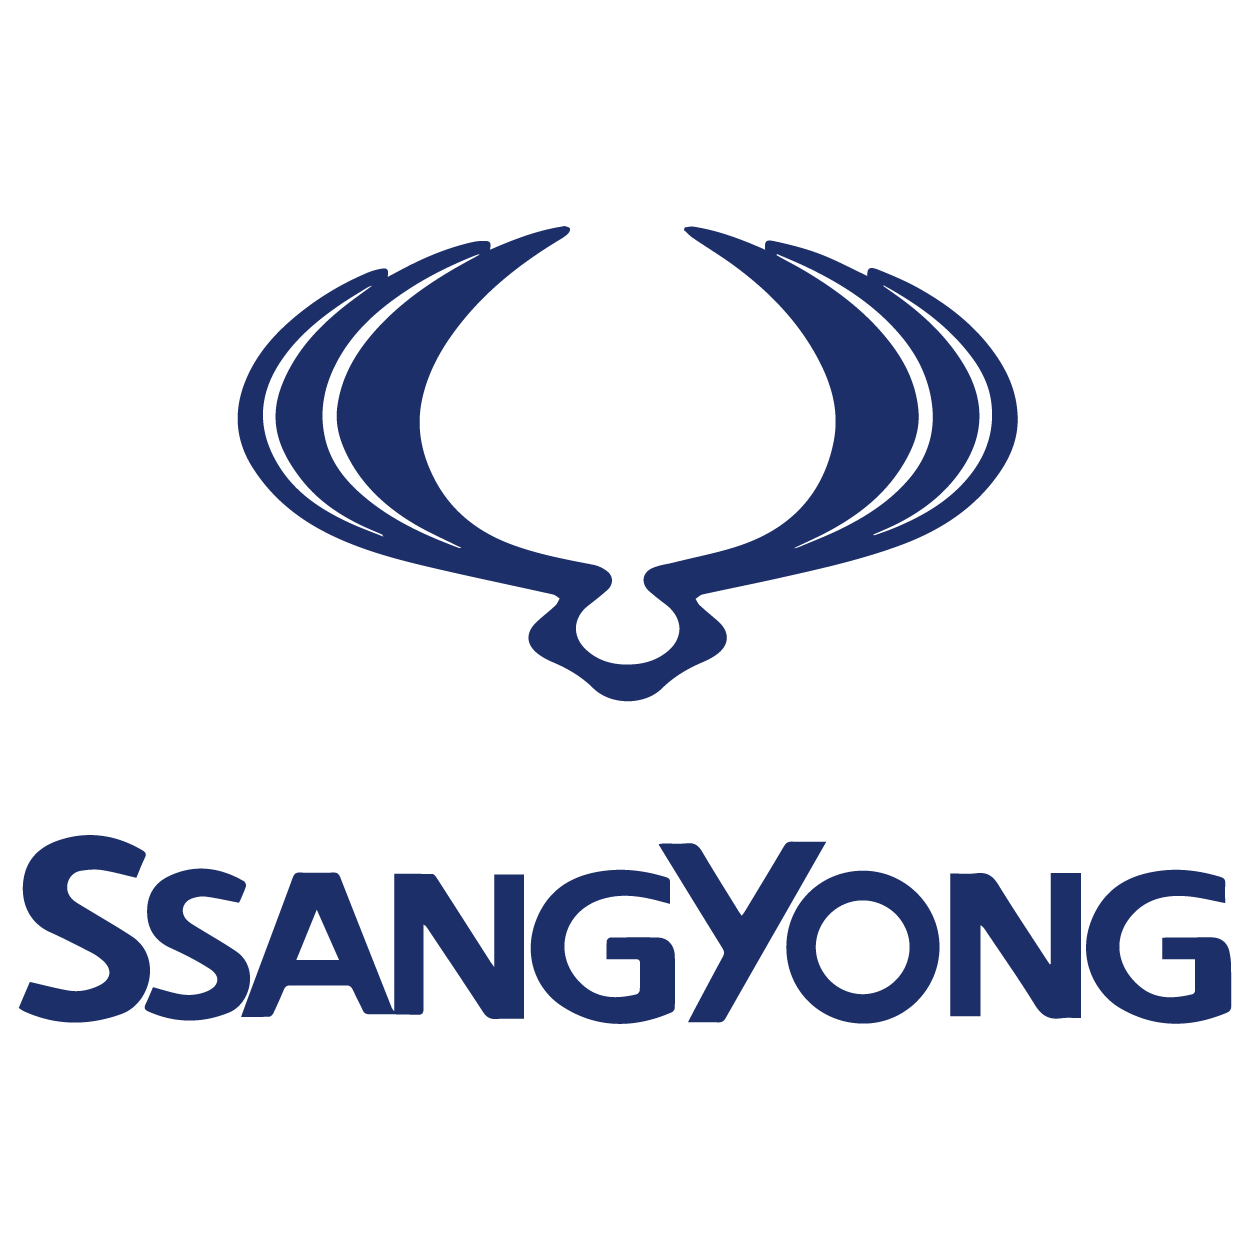 Logo_SsangYong